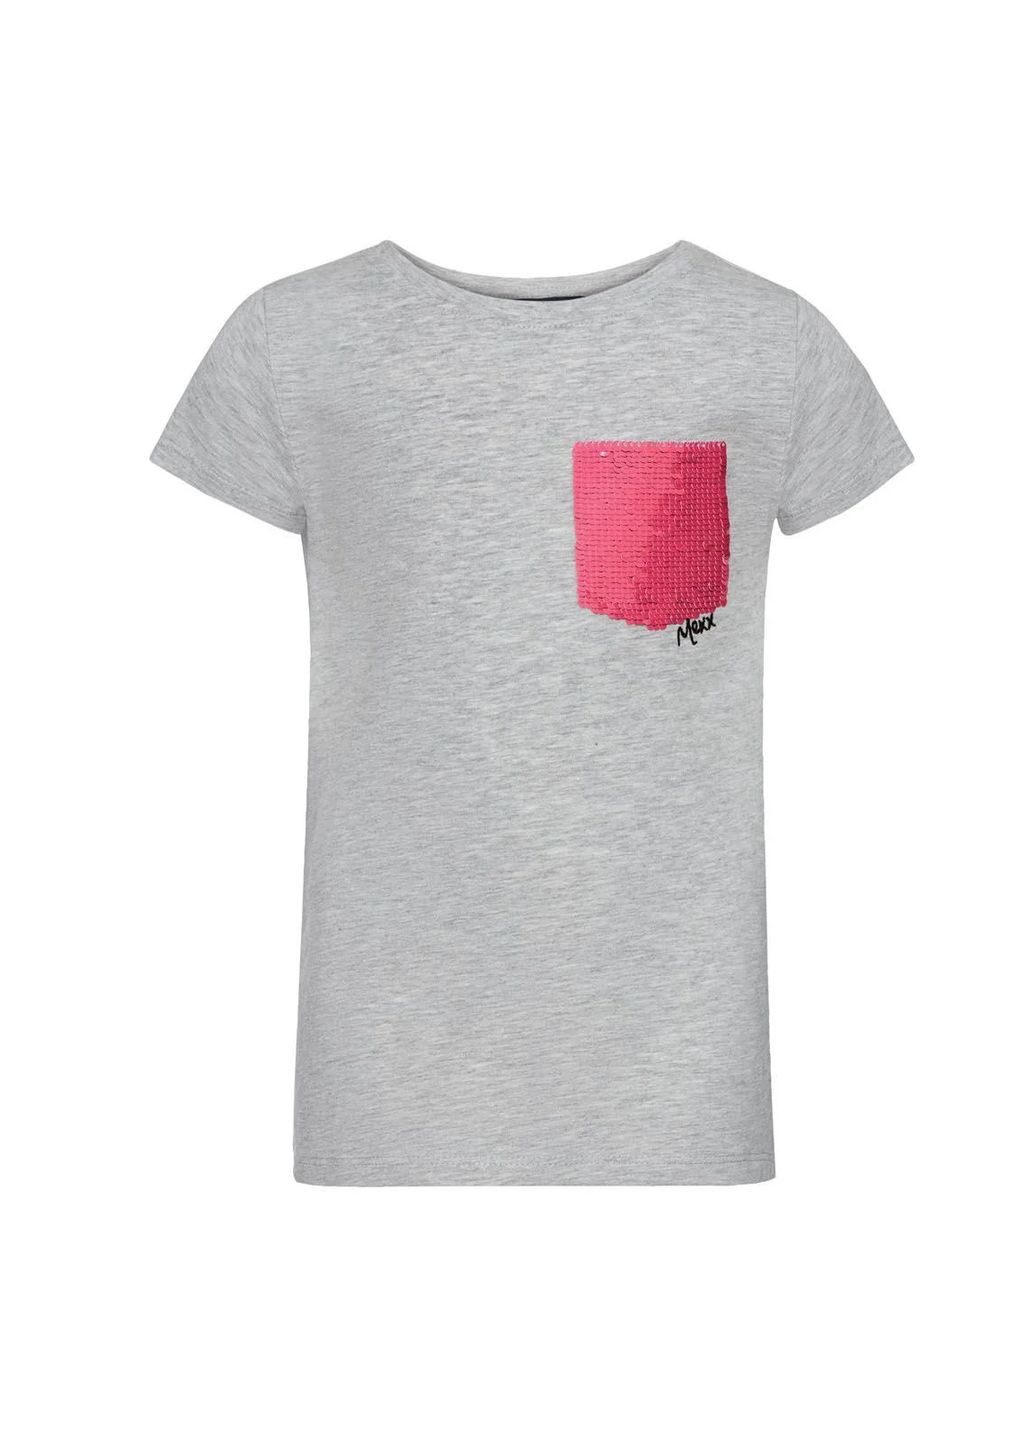 Сіра демісезонна футболка з паєтками що перевертаються для дівчинки 361888 сірий Mexx